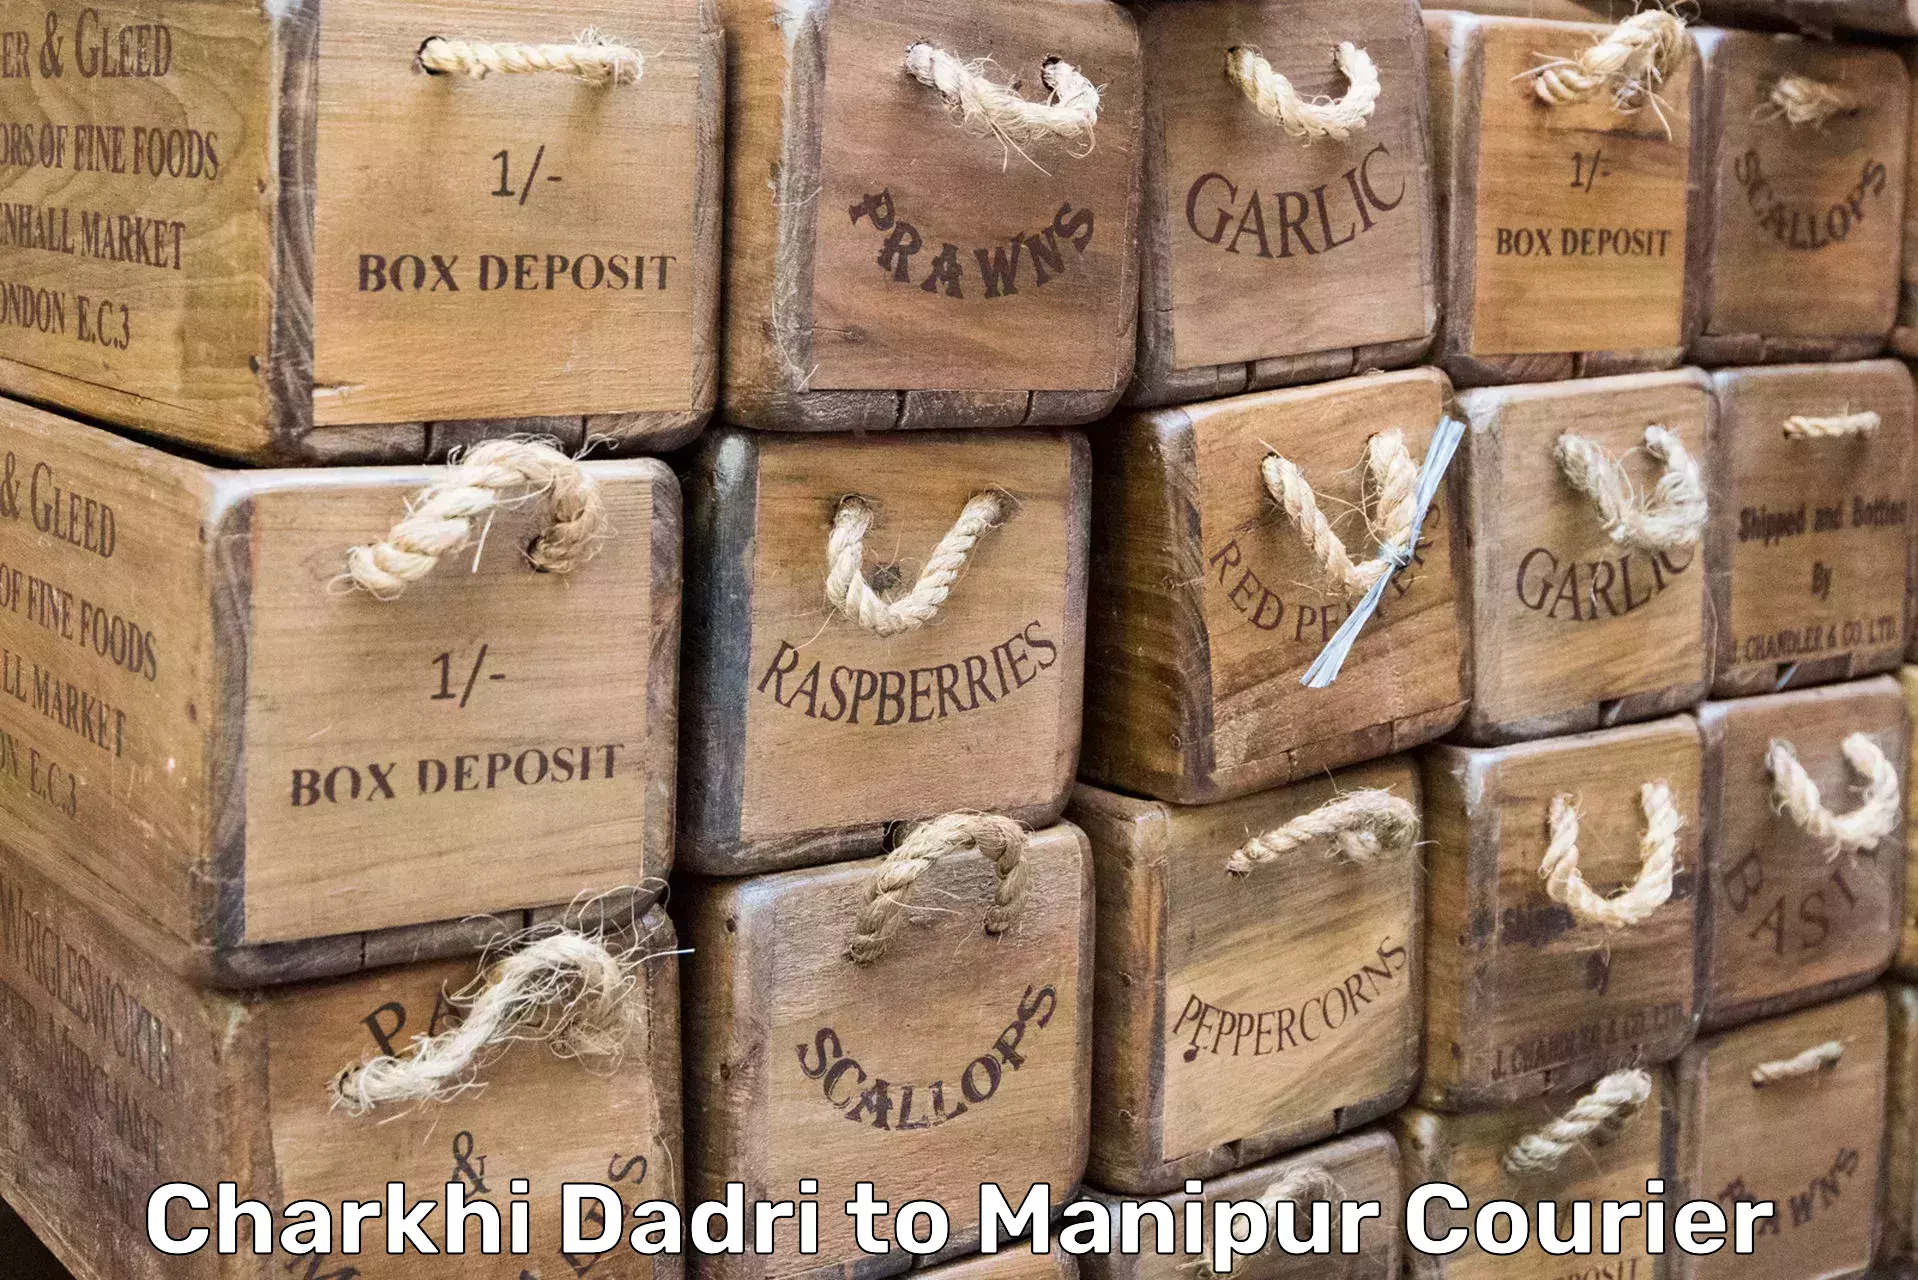 Furniture delivery service Charkhi Dadri to Senapati